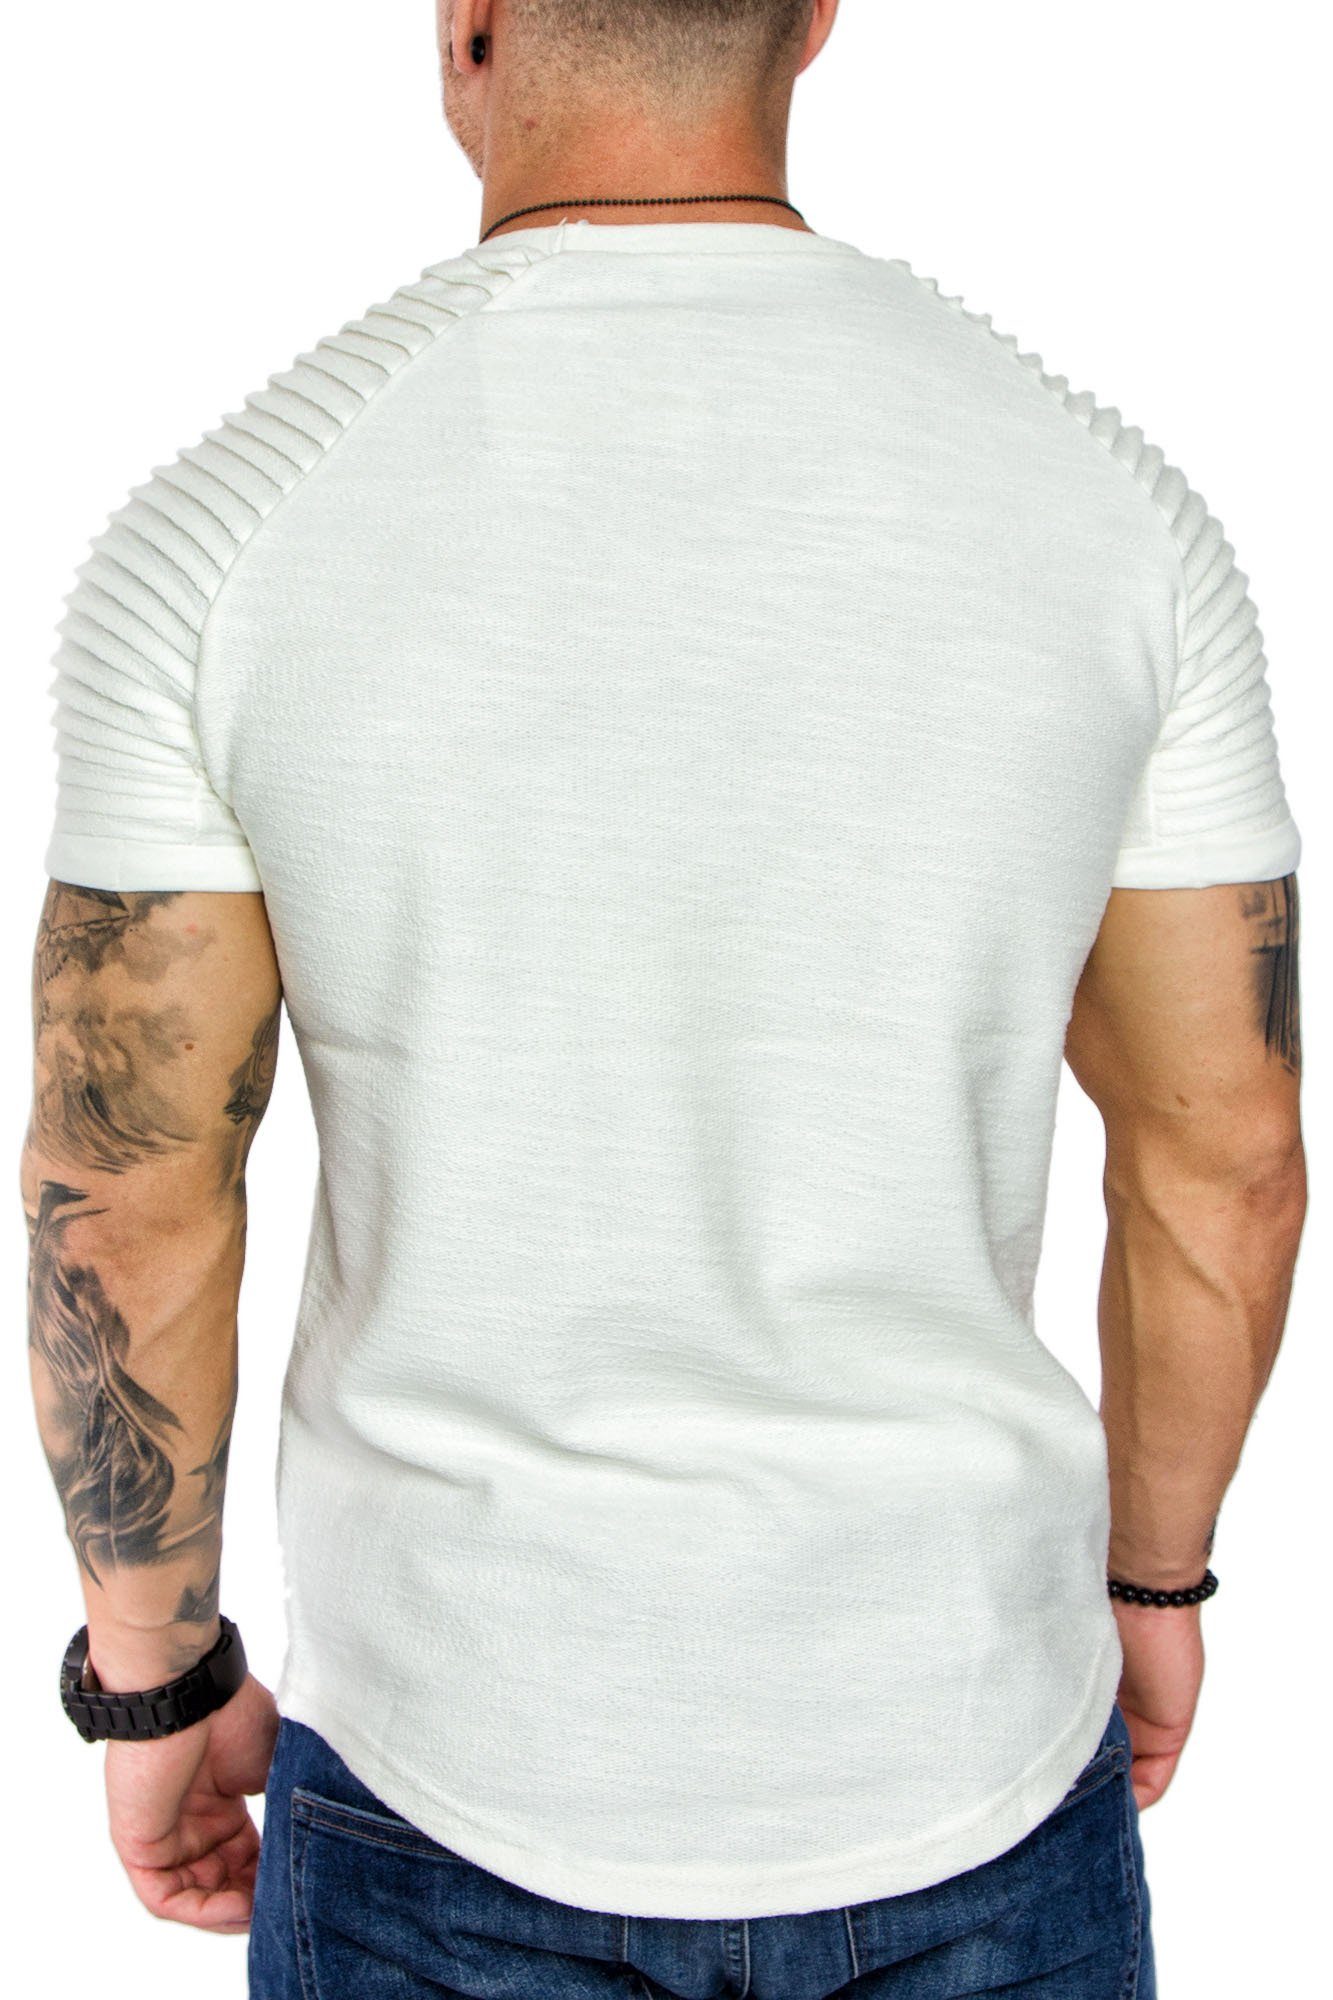 Oversize Vintage Amaci&Sons T-Shirt Herren Rundhalsausschnitt Weiß Sweat SALINAS Biker mit Shirt